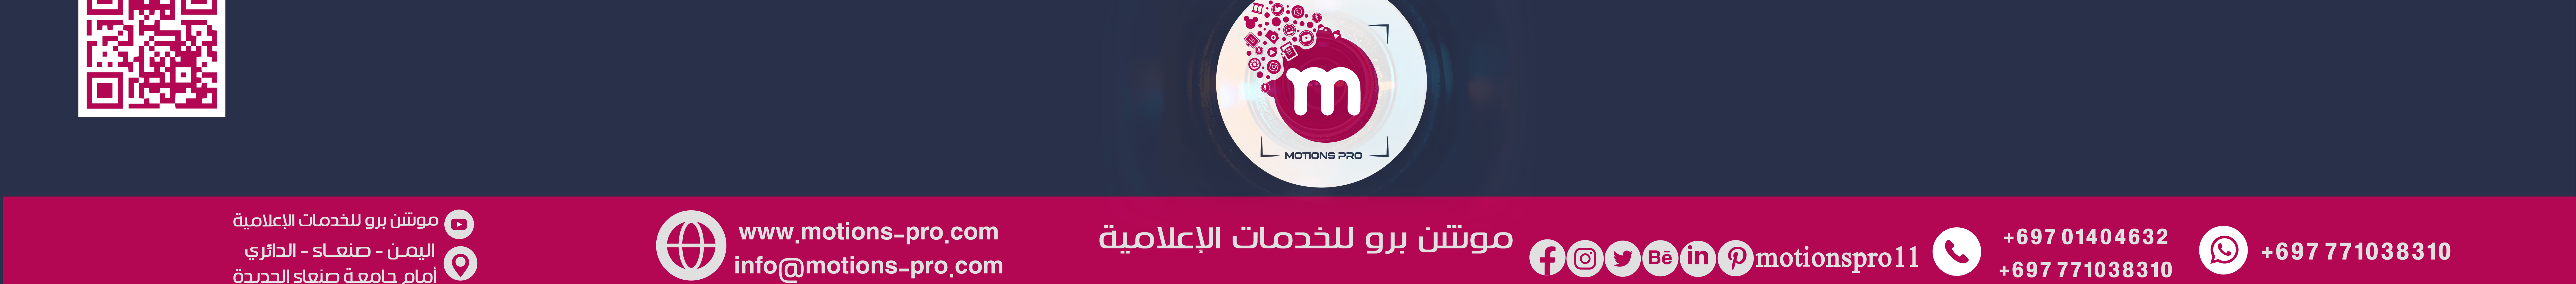 موشن برو للخدمات الإعلامية's profile banner